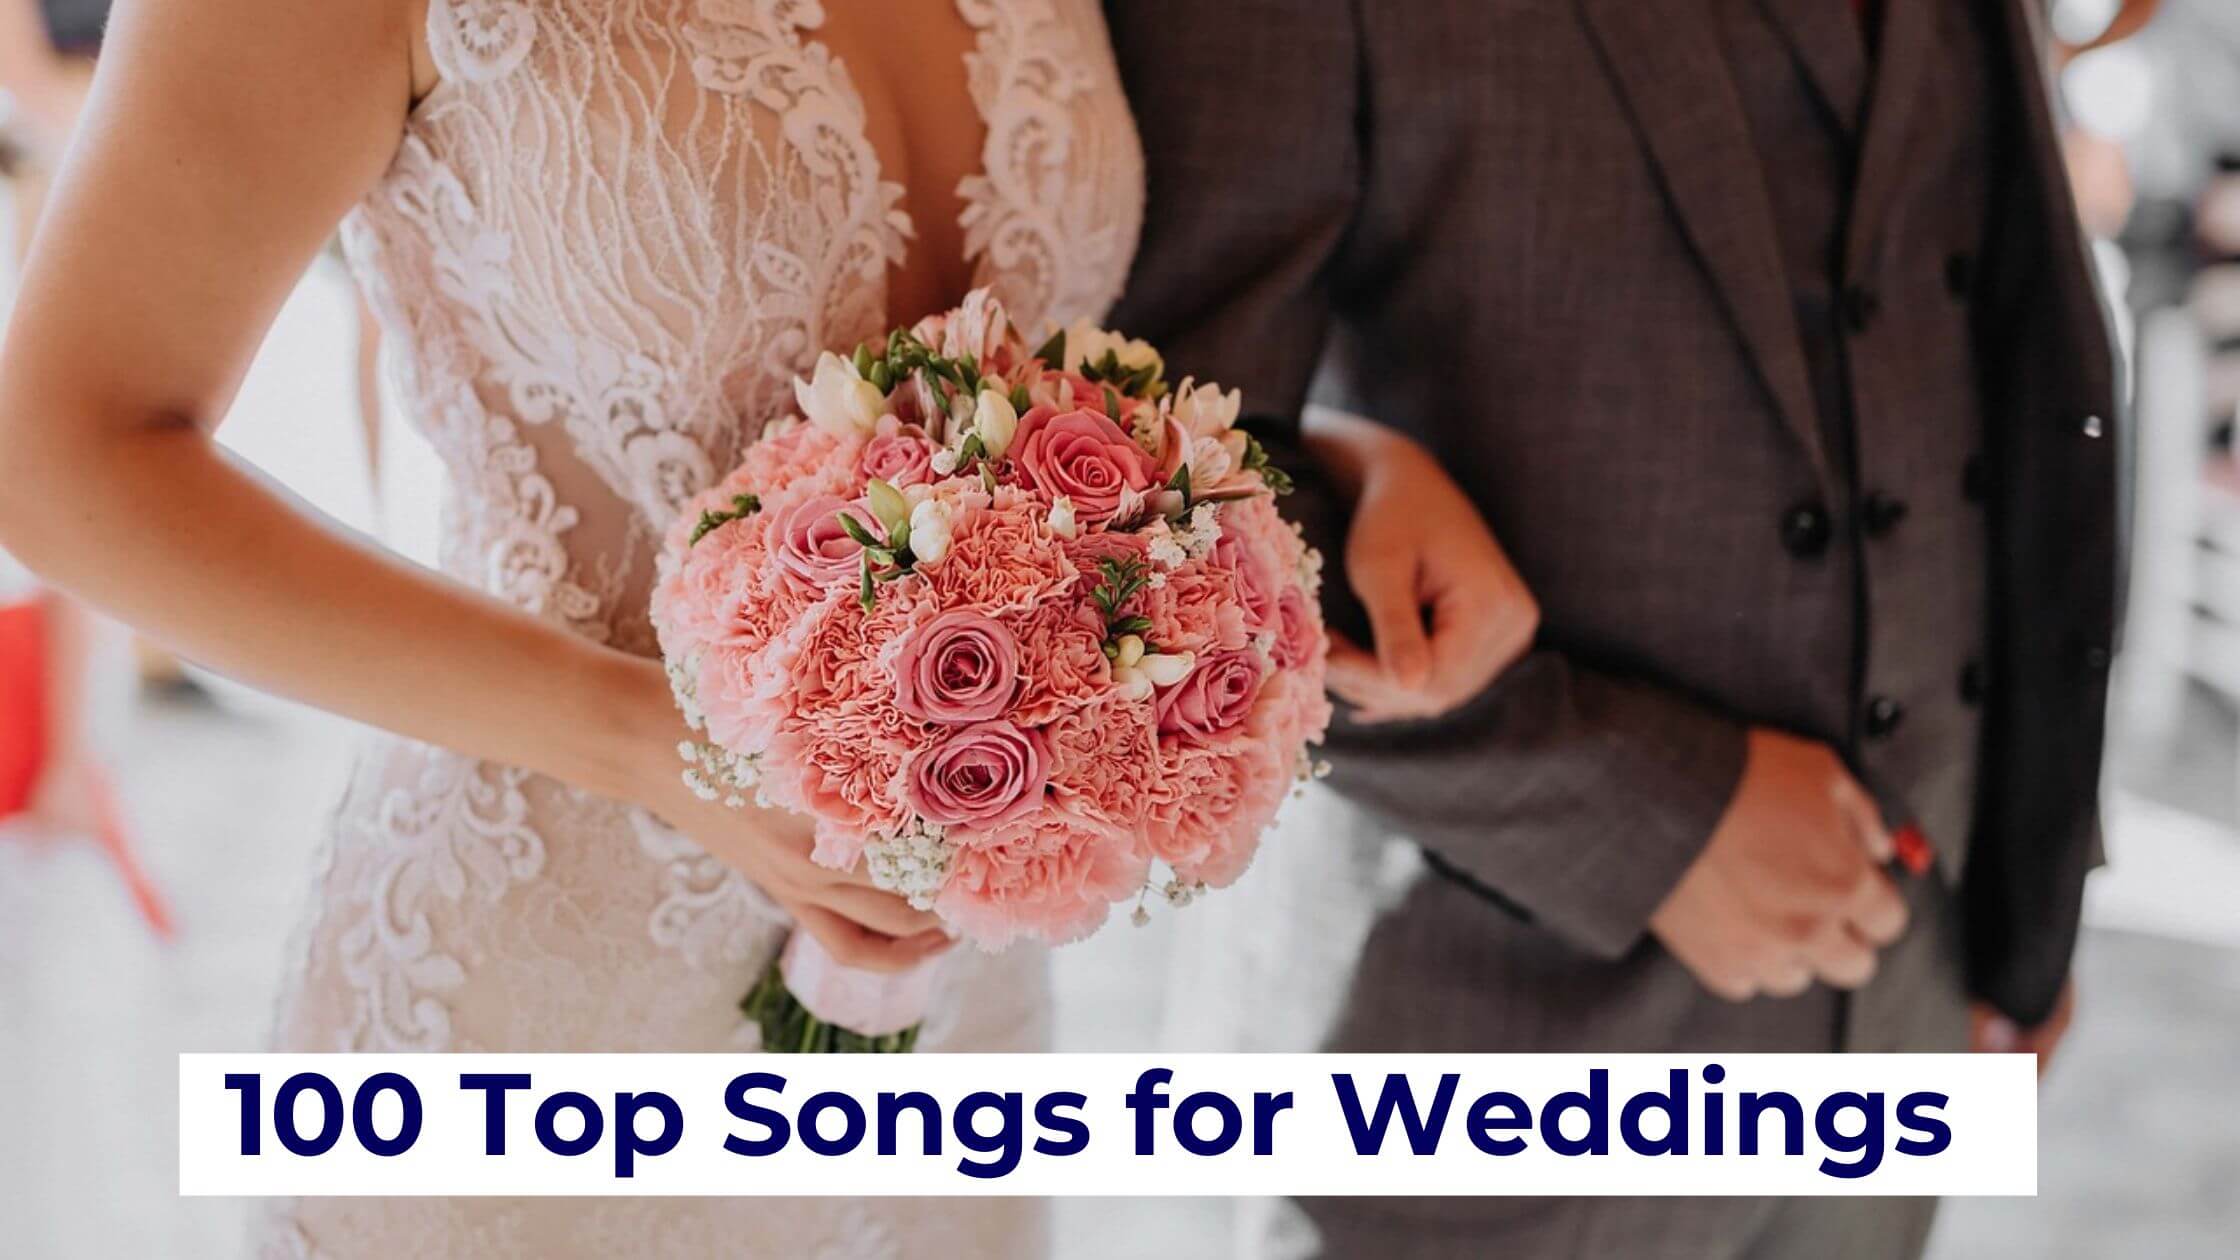 Top songs for weddings